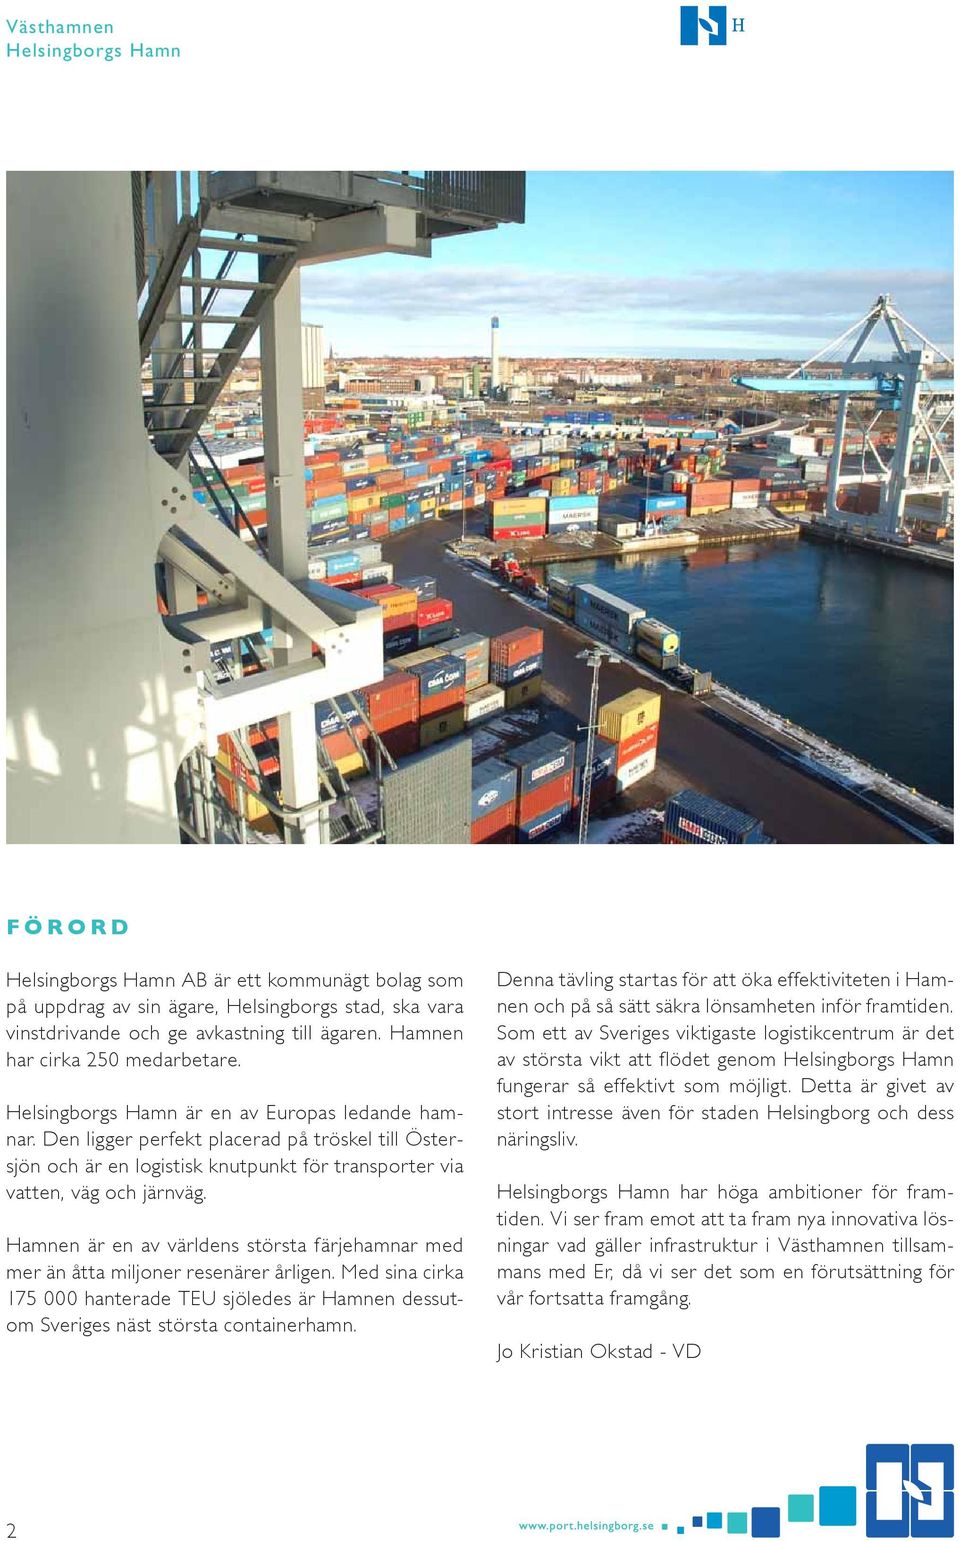 Hamnen är en av världens största färjehamnar med mer än åtta miljoner resenärer årligen. Med sina cirka 175 000 hanterade TEU sjöledes är Hamnen dessutom Sveriges näst största containerhamn.